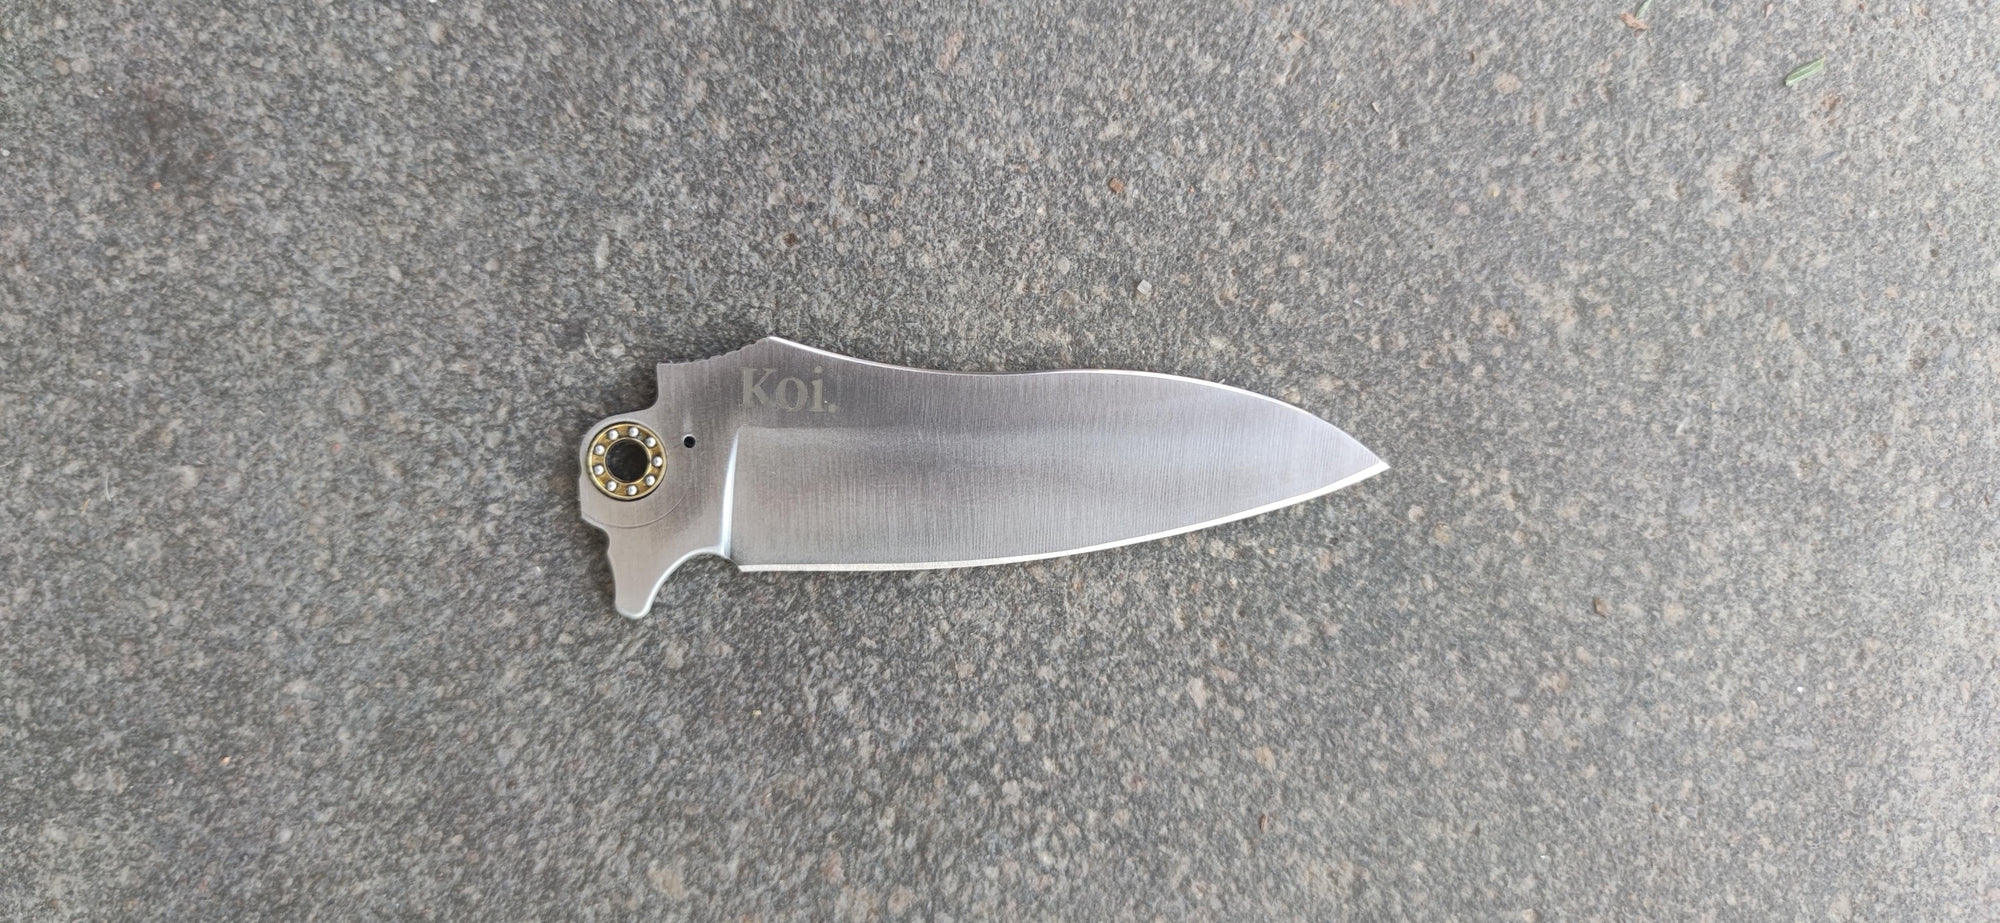 Pocket Knife Blade Shapes 101